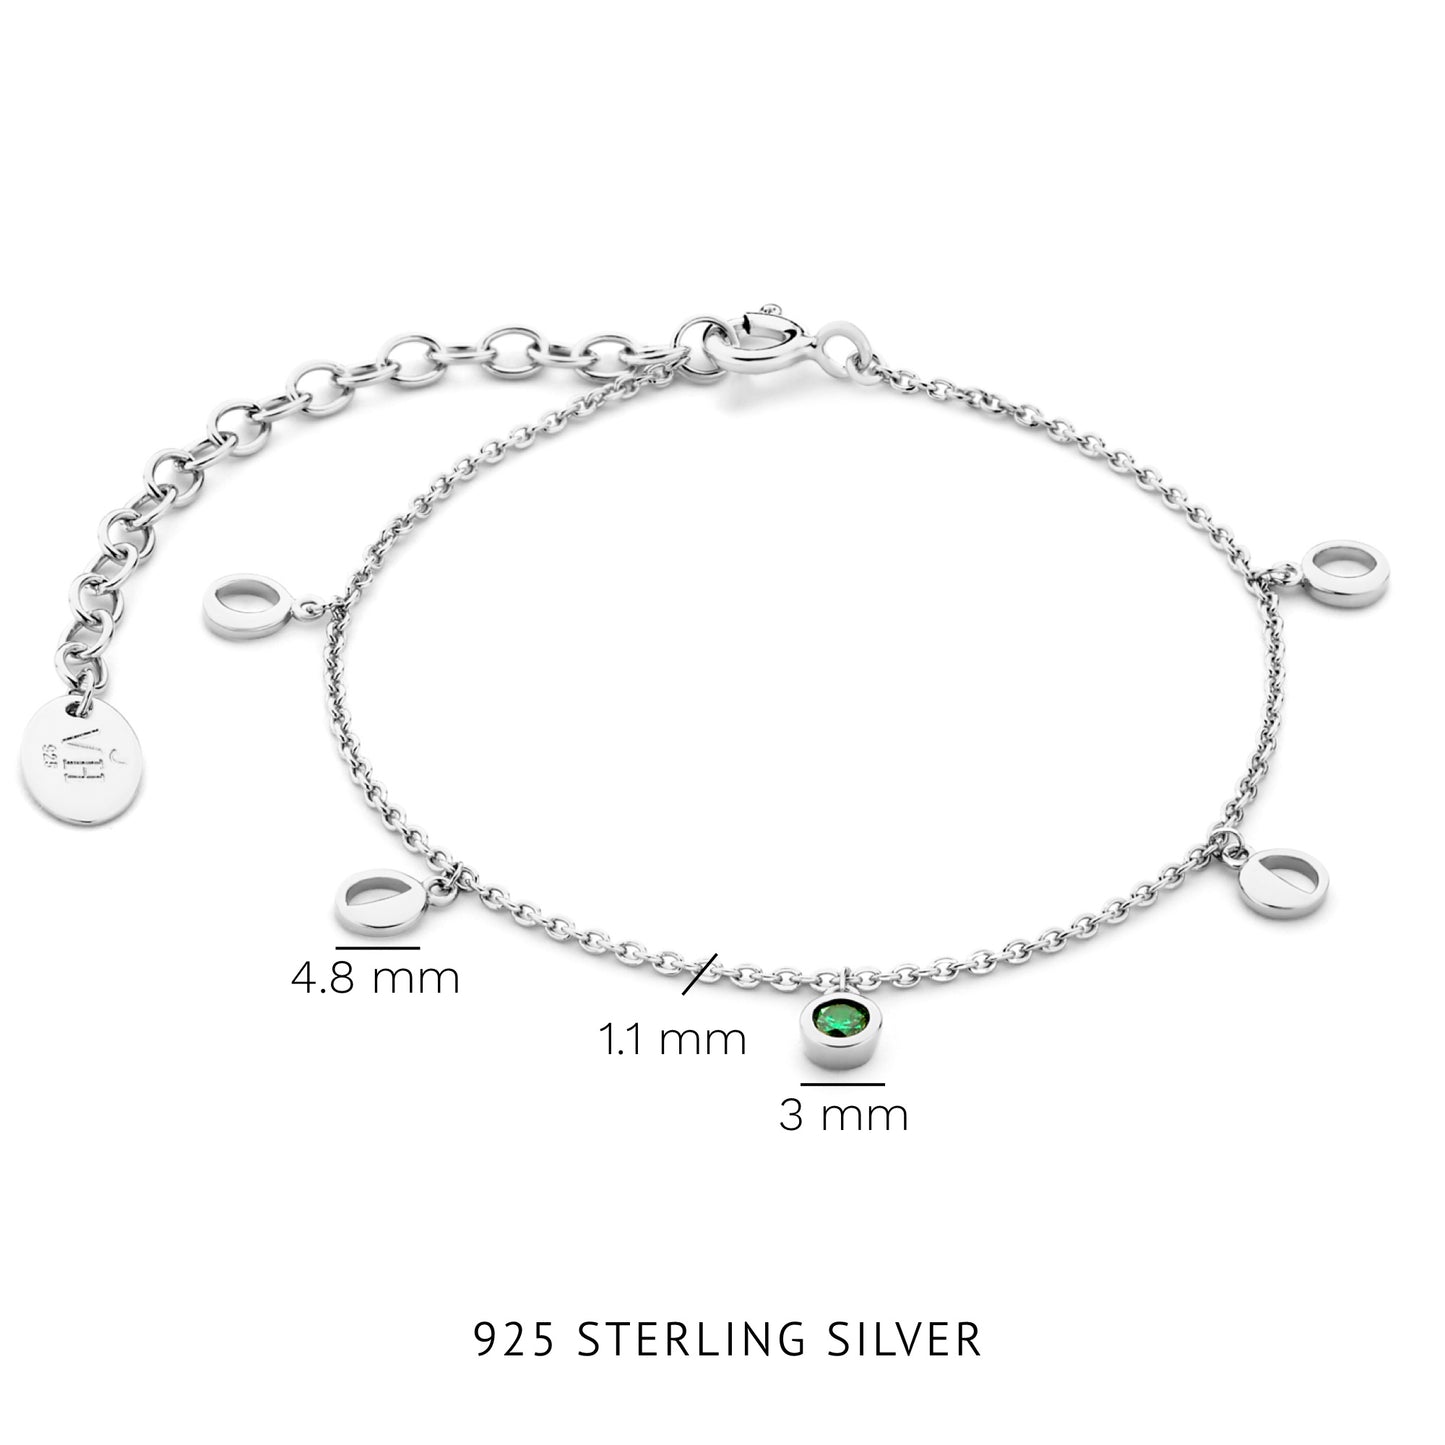 Luna bracciale in argento sterling 925 con pietra zircone verde